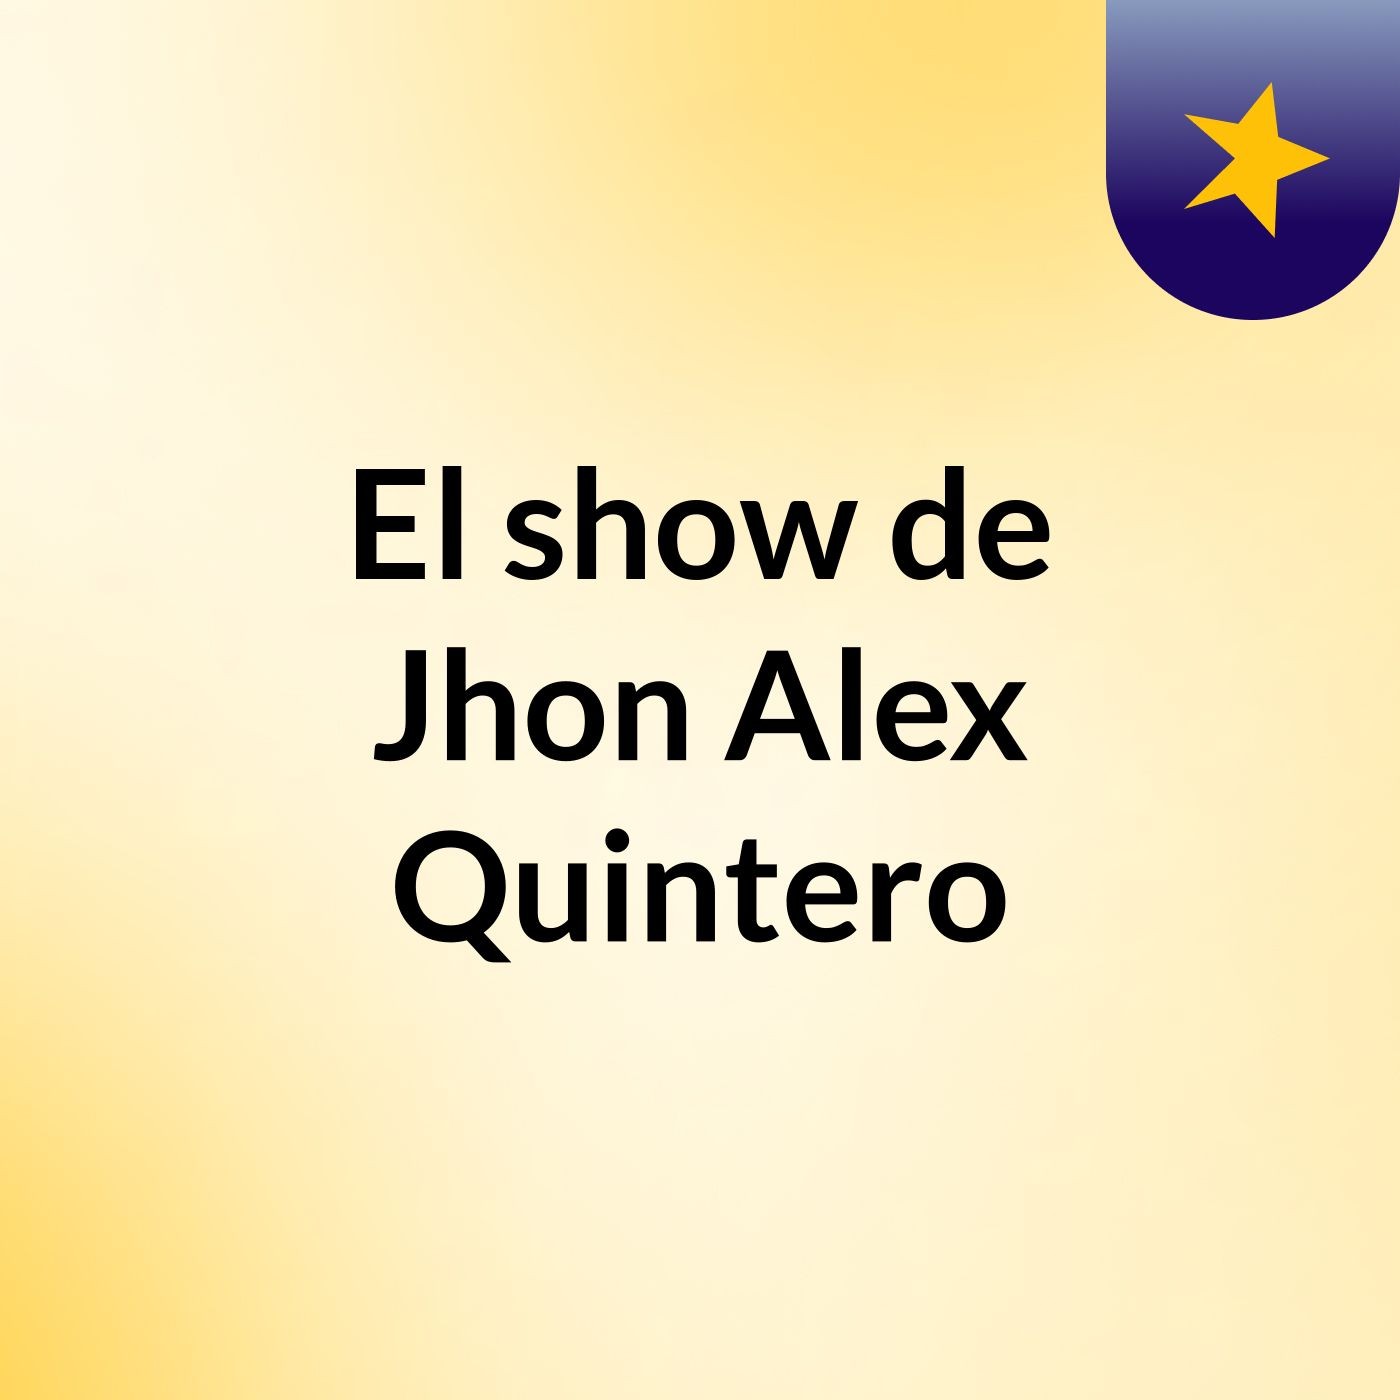 El show de Jhon Alex Quintero